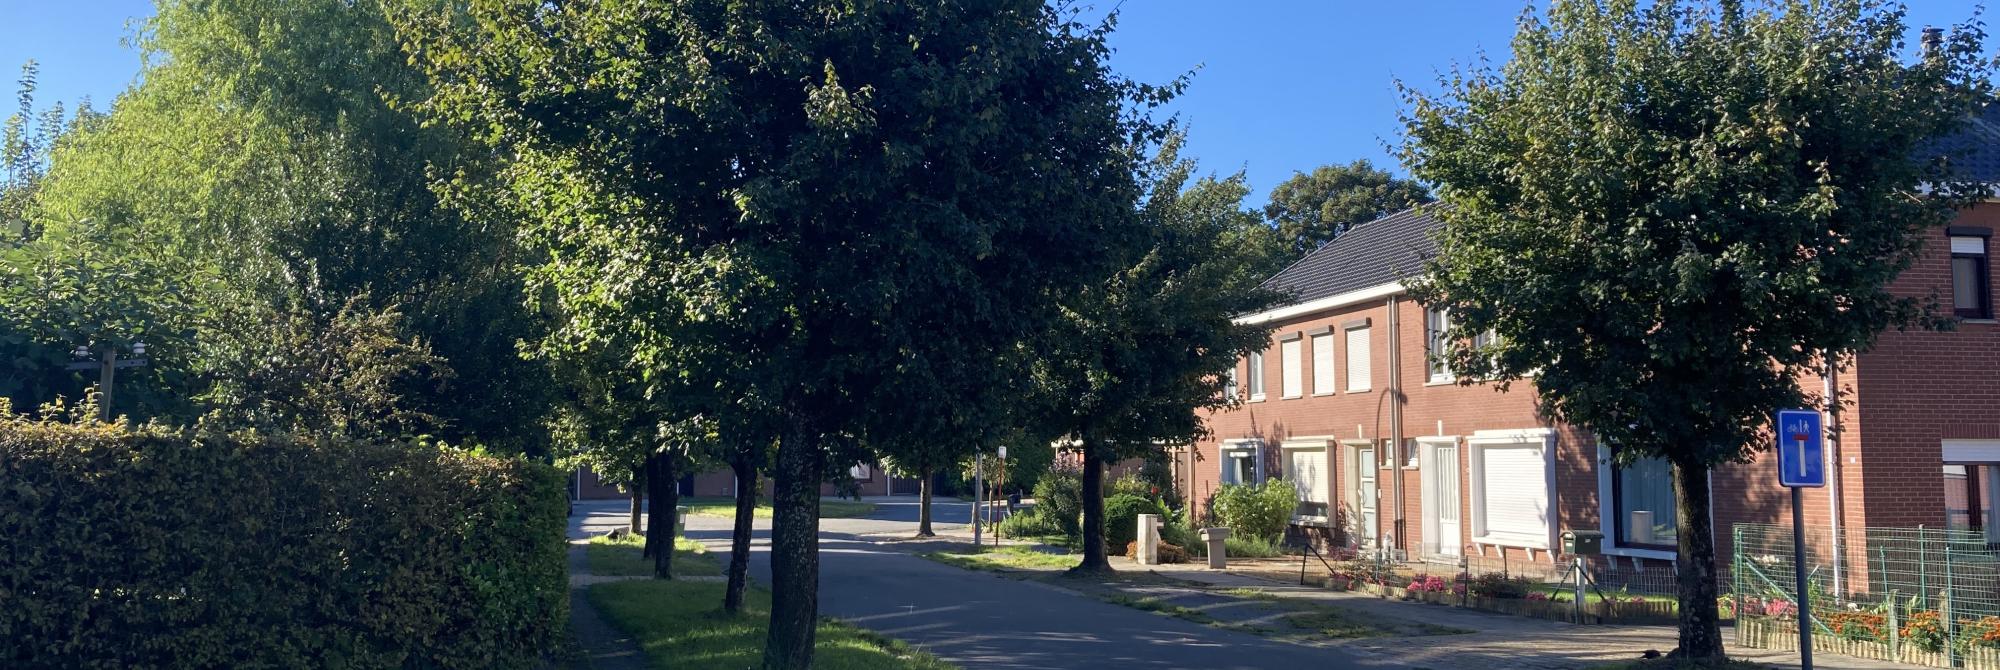 Openbaar domein - straat met pleintje in de Molenwijk